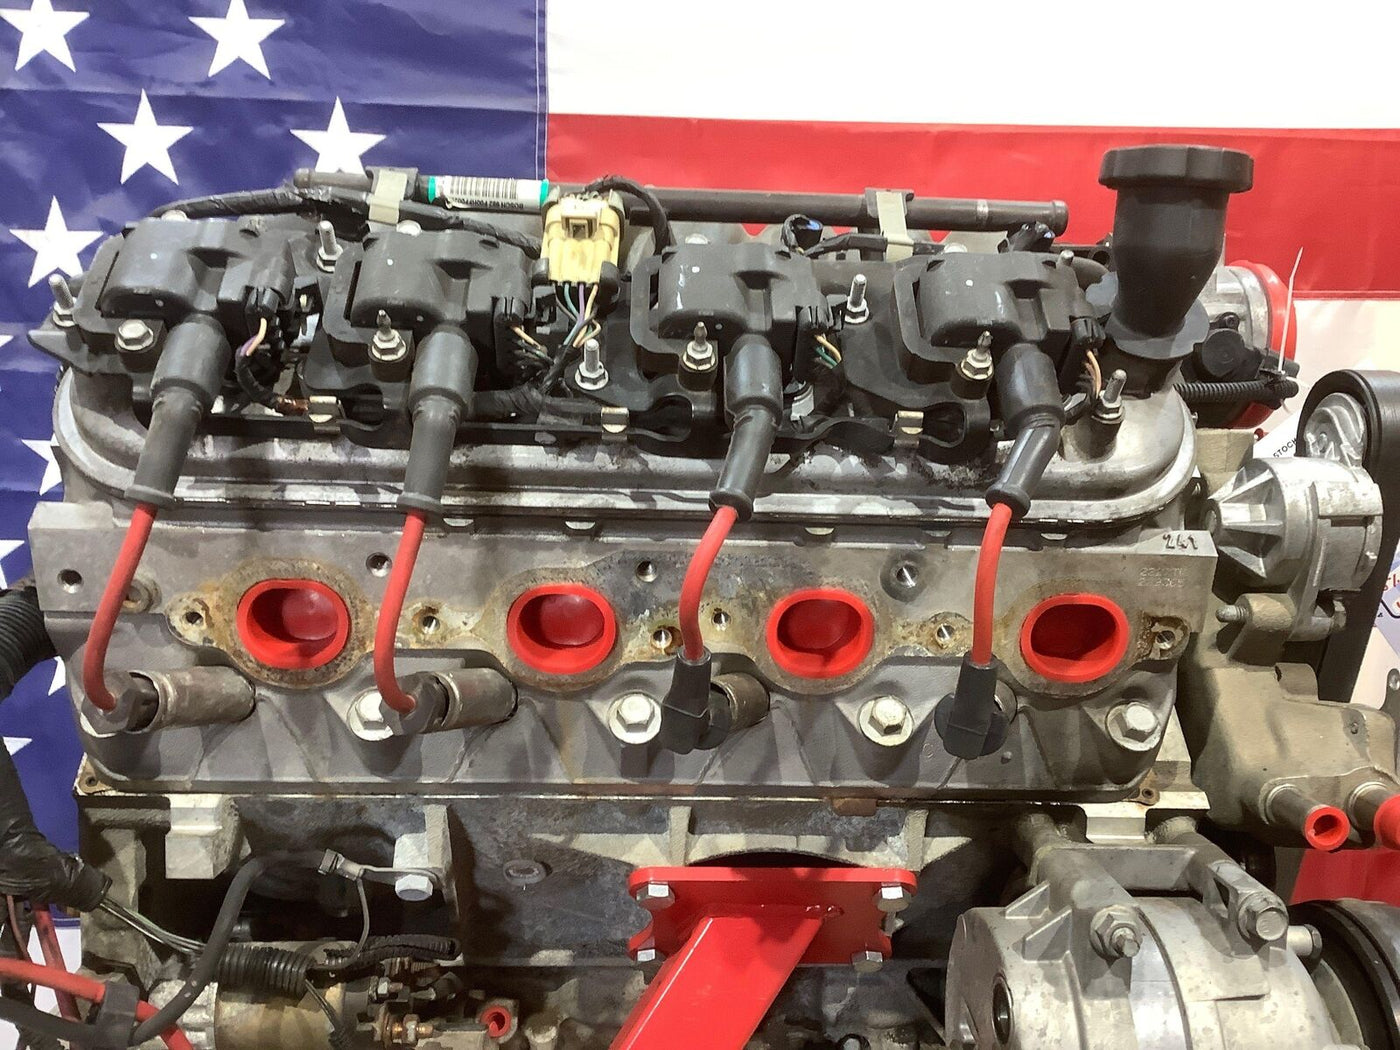 Chevy Corvette C5 LS1 5.7L V8 Engine Swap Donor Dropout (LS1) Hot Rod Swap 98K